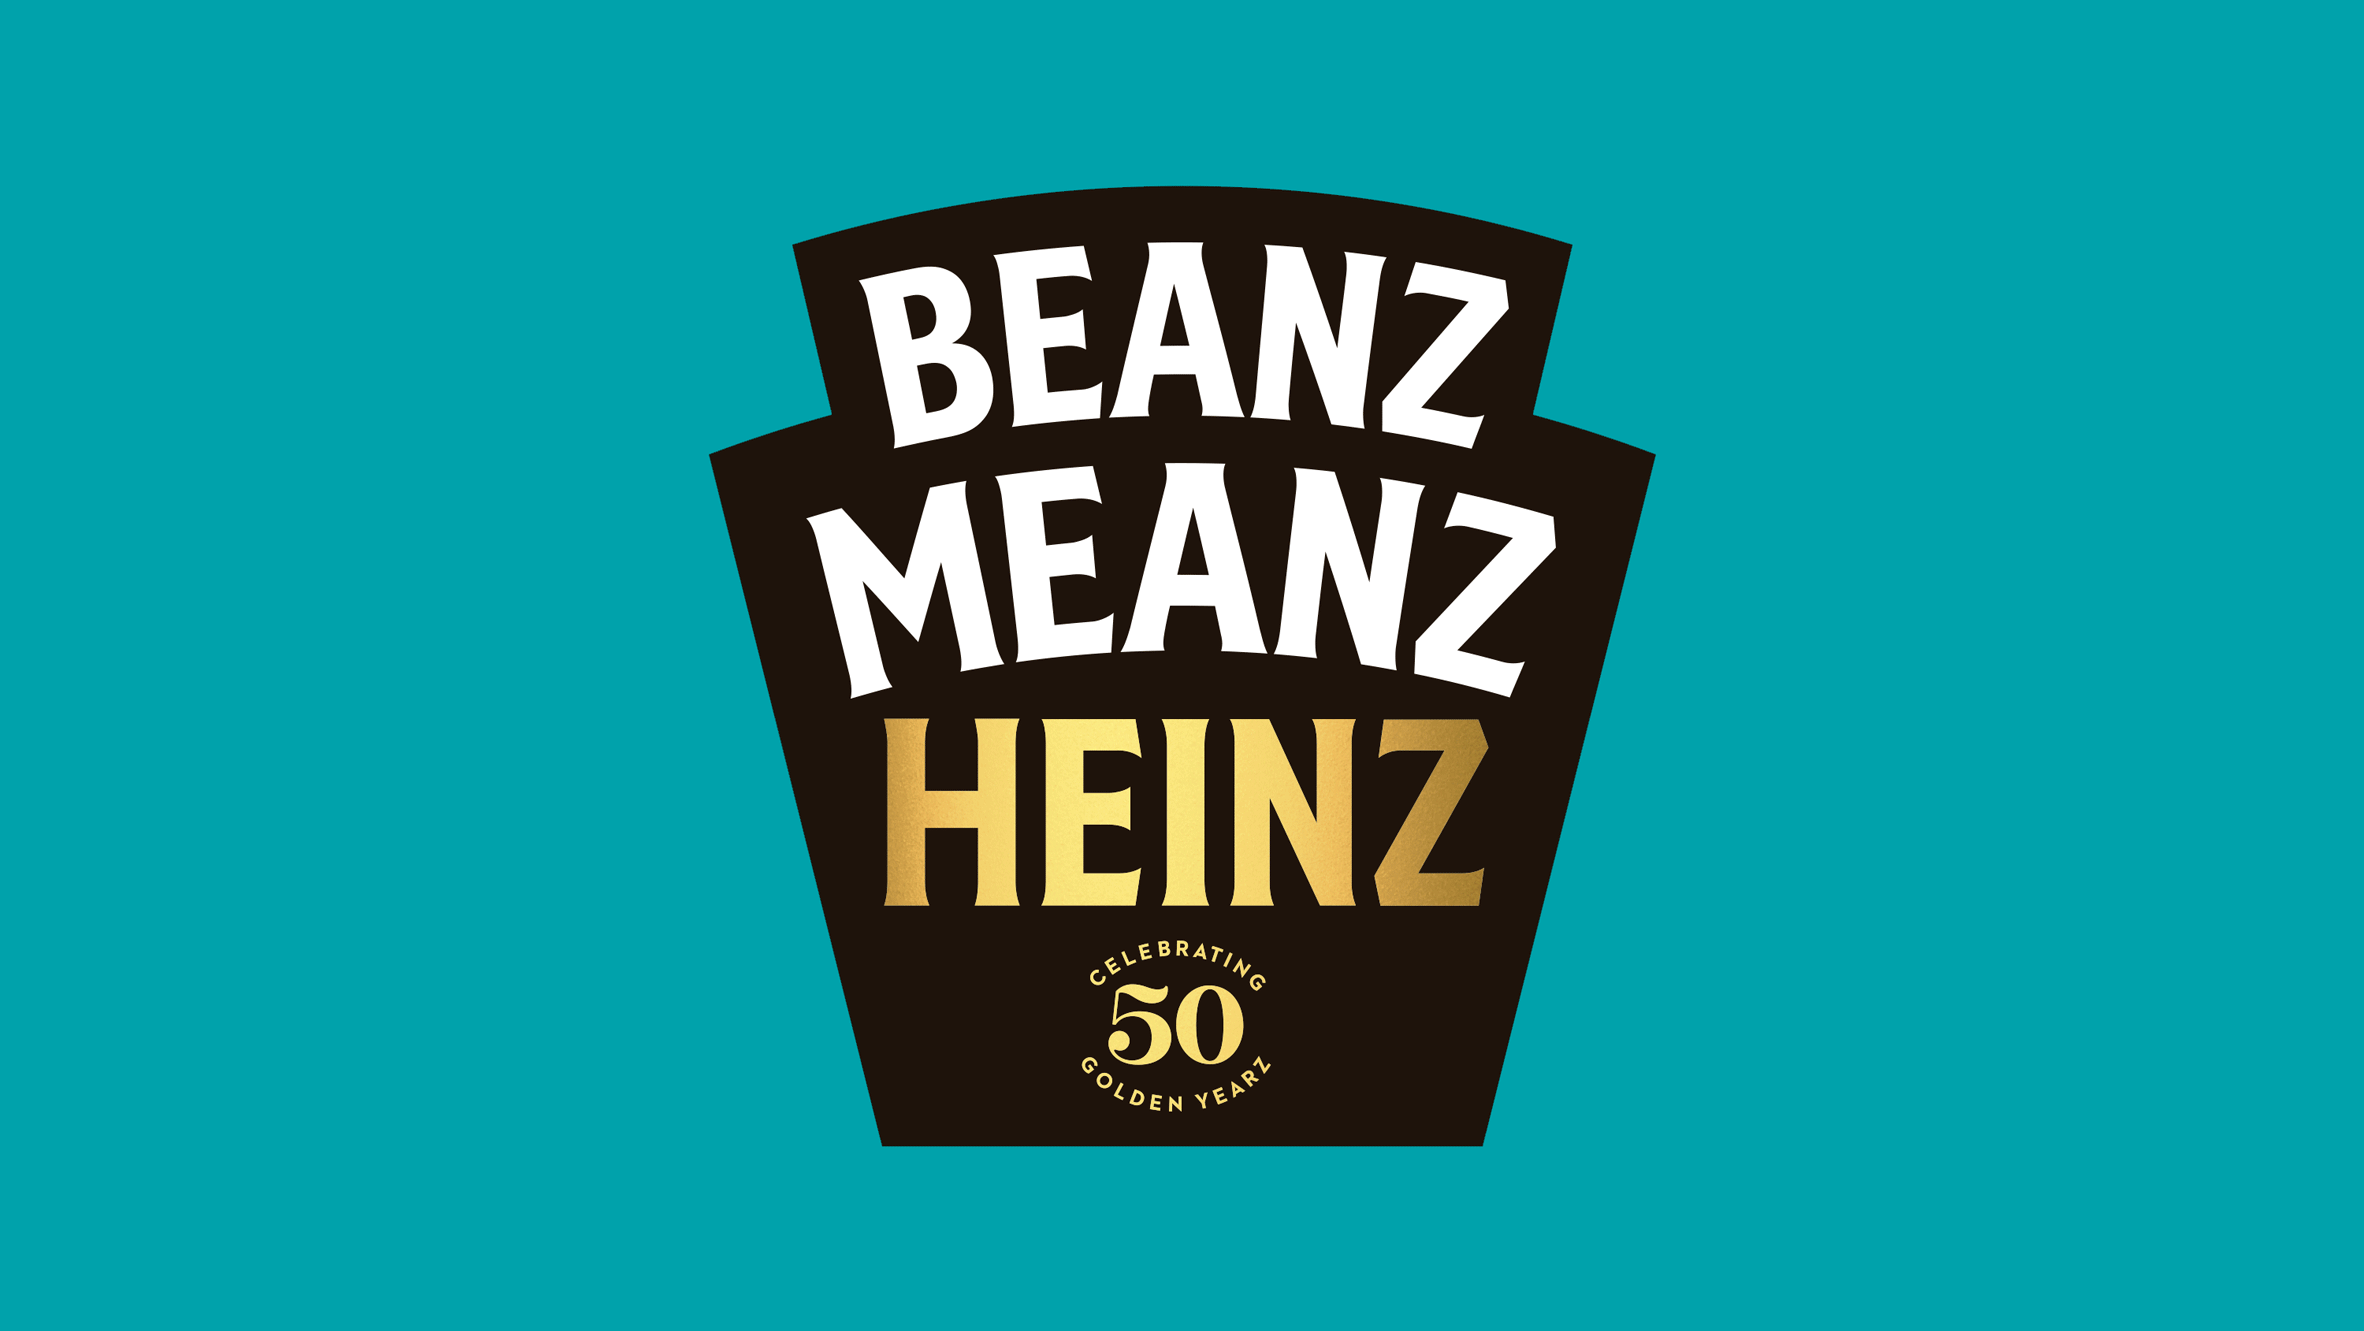 JKR - Heinz Beanz